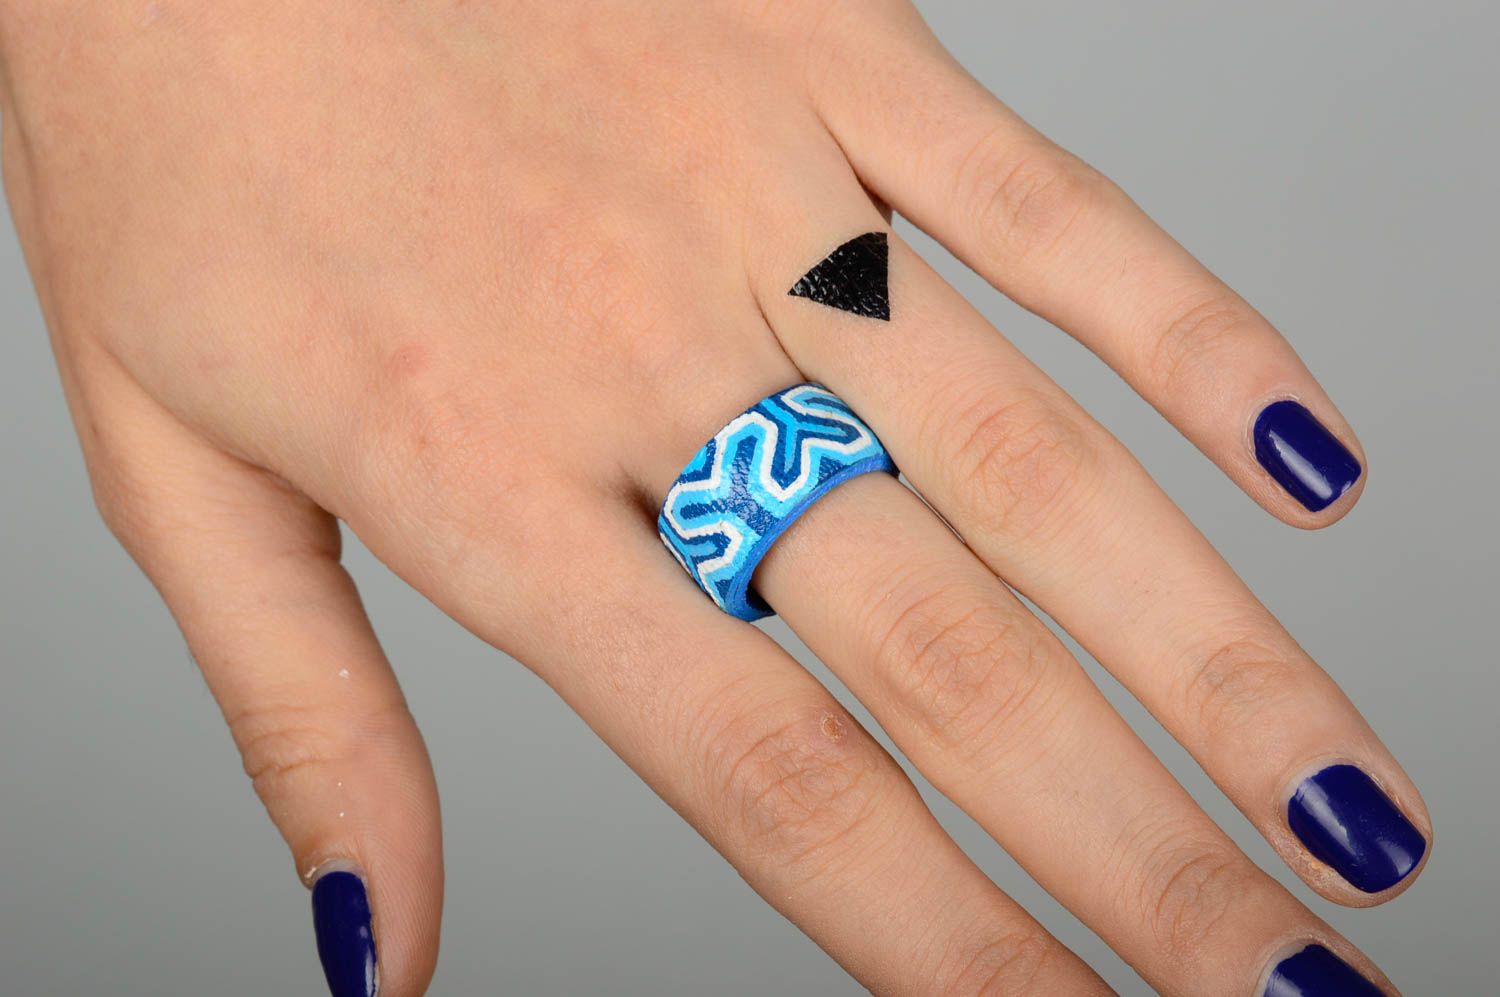 Кольцо ручной работы кожаный аксессуар голубой оригинальное кольцо с росписью фото 2